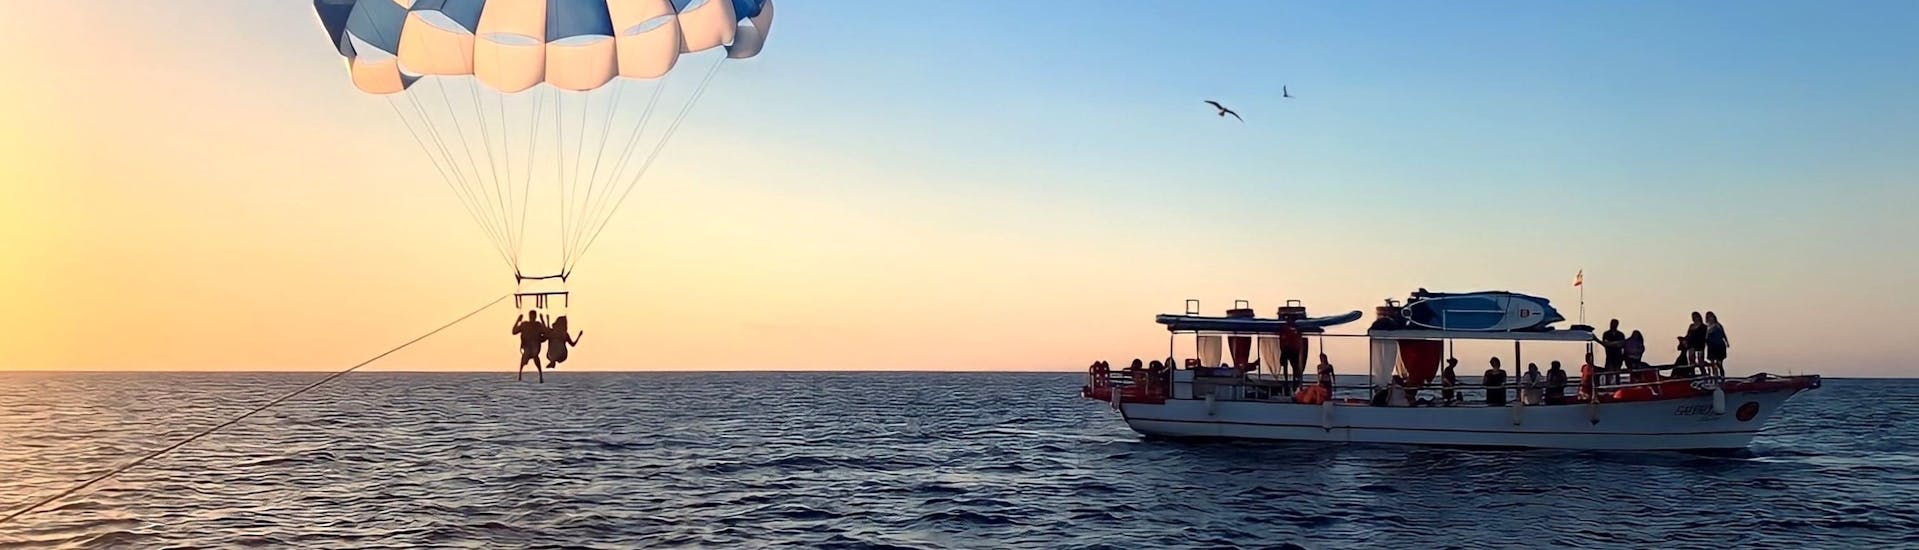 Das Boot Salvador Ibiza segelt bei Sonnenuntergang entlang der Küste von Ibiza.